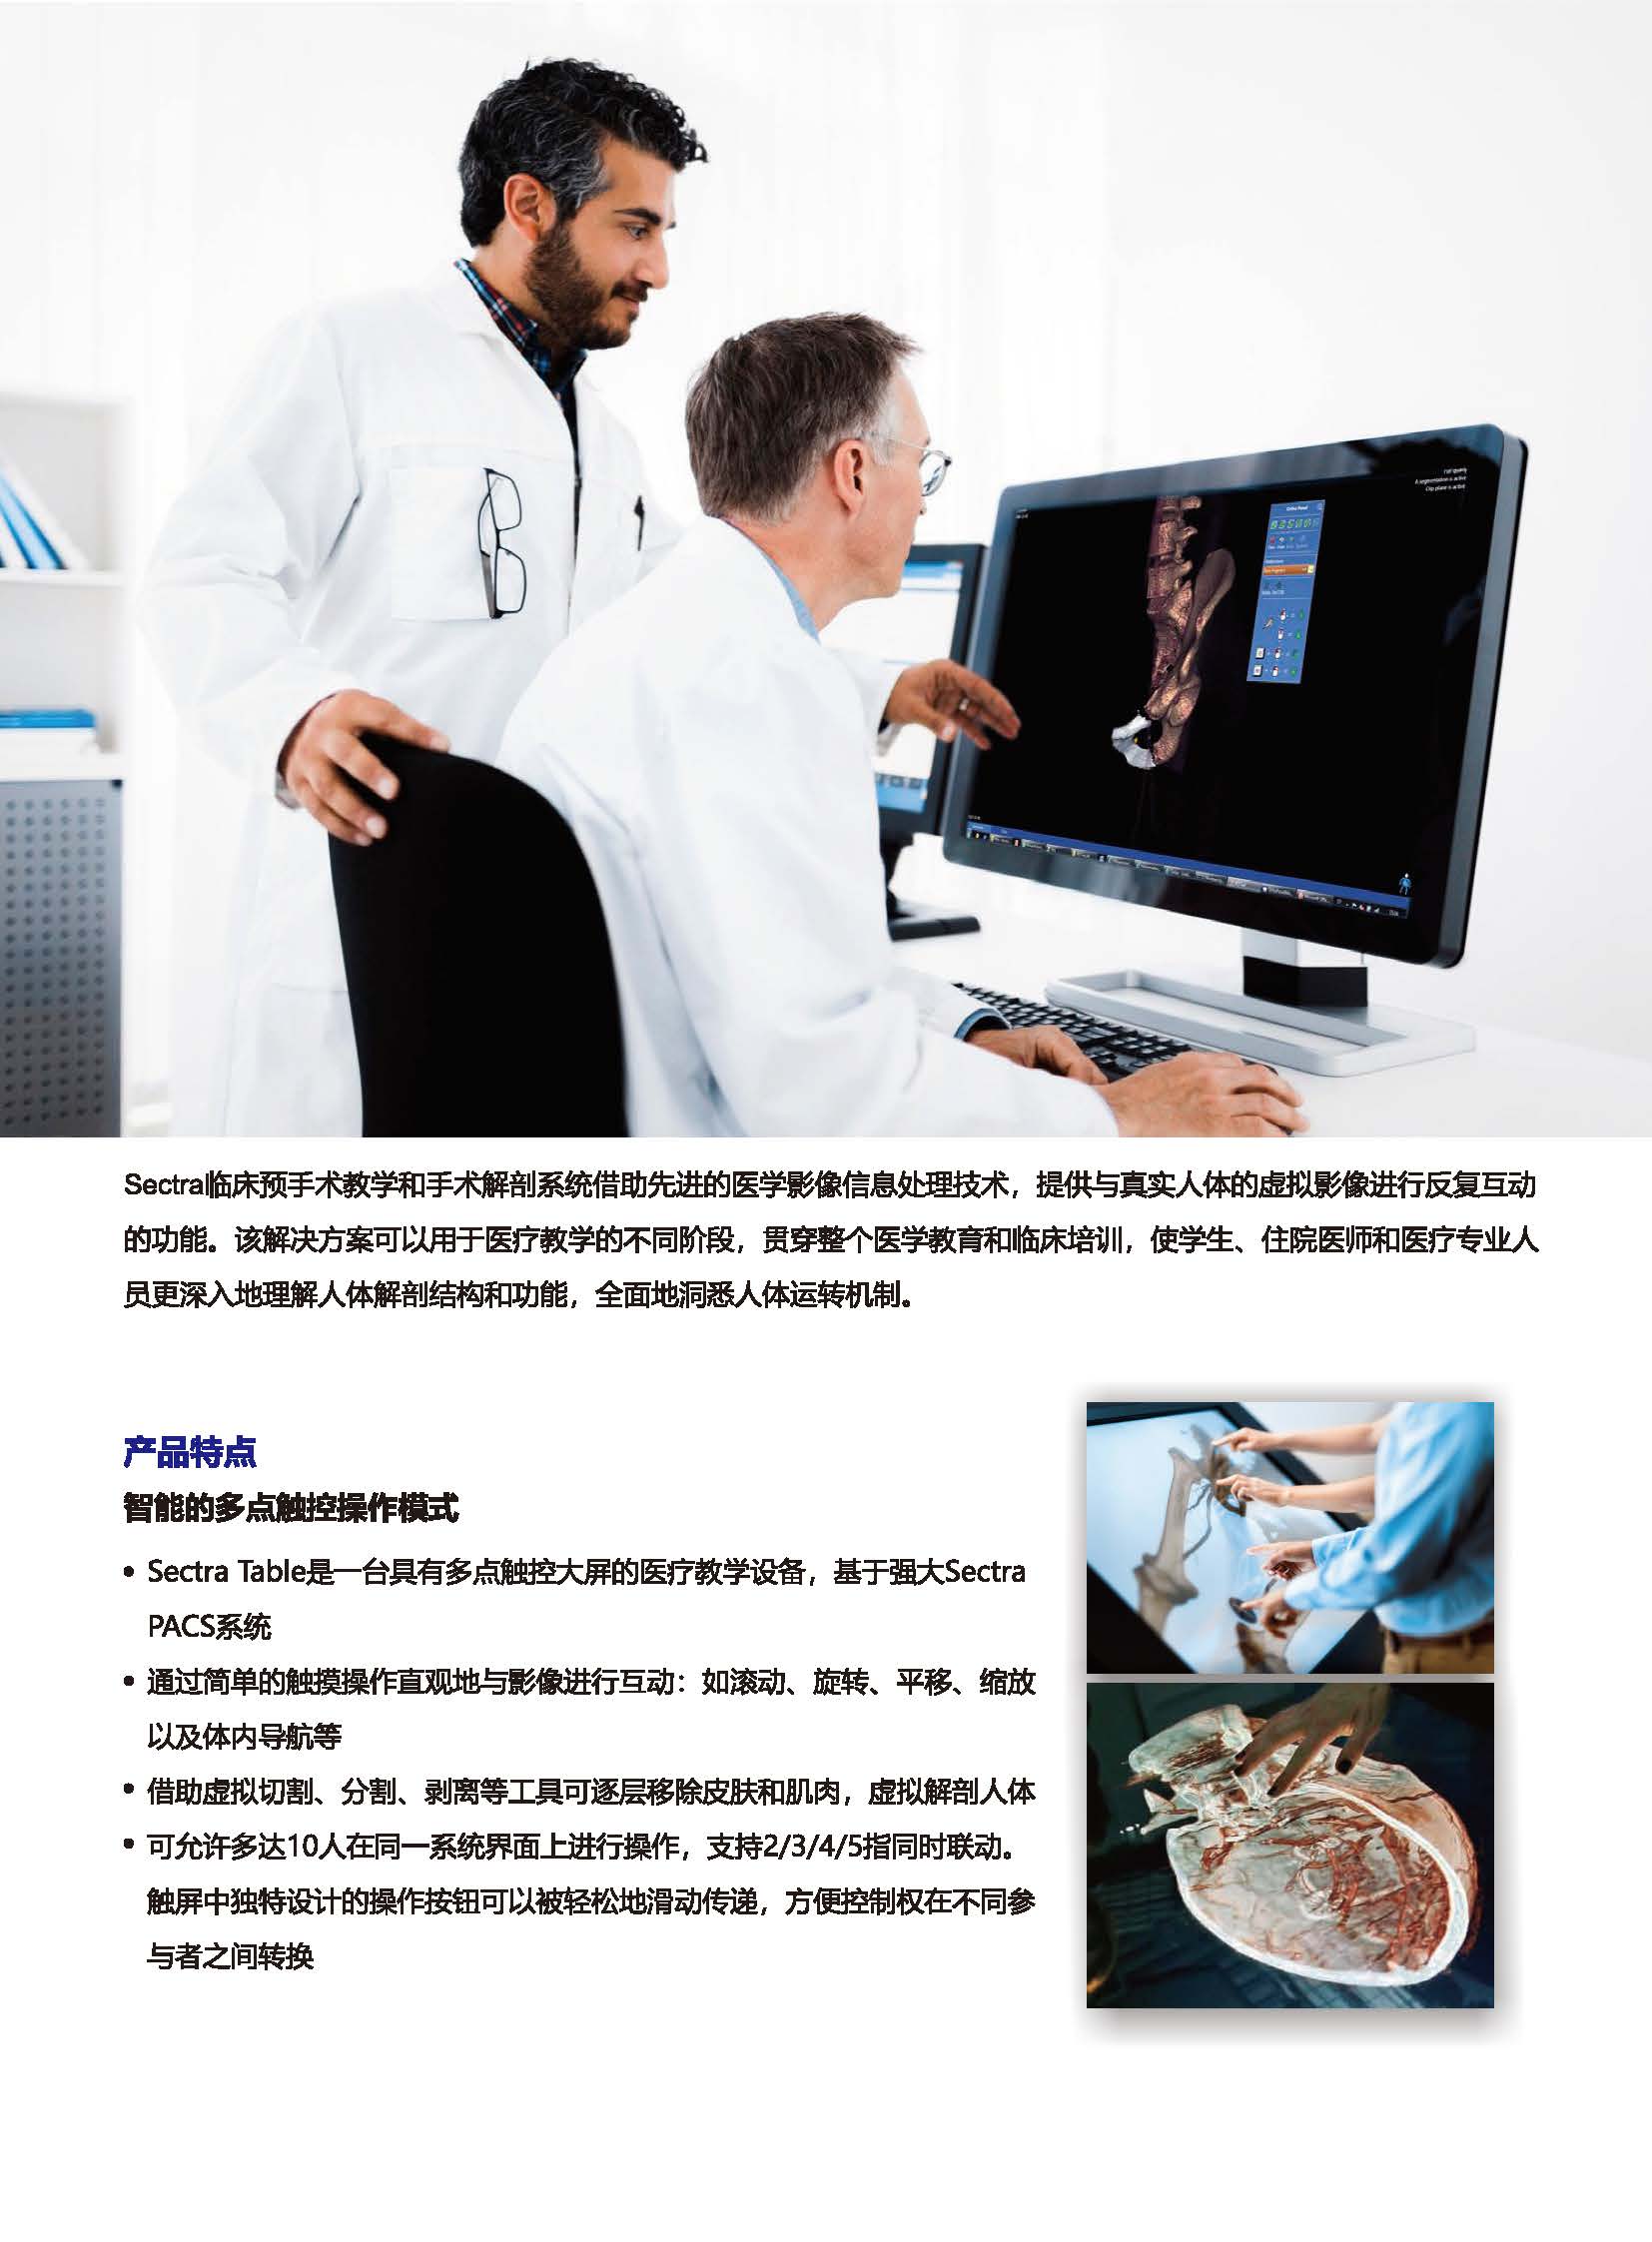 临床预手术教学和手术解剖系统官网用_页面_2.jpg